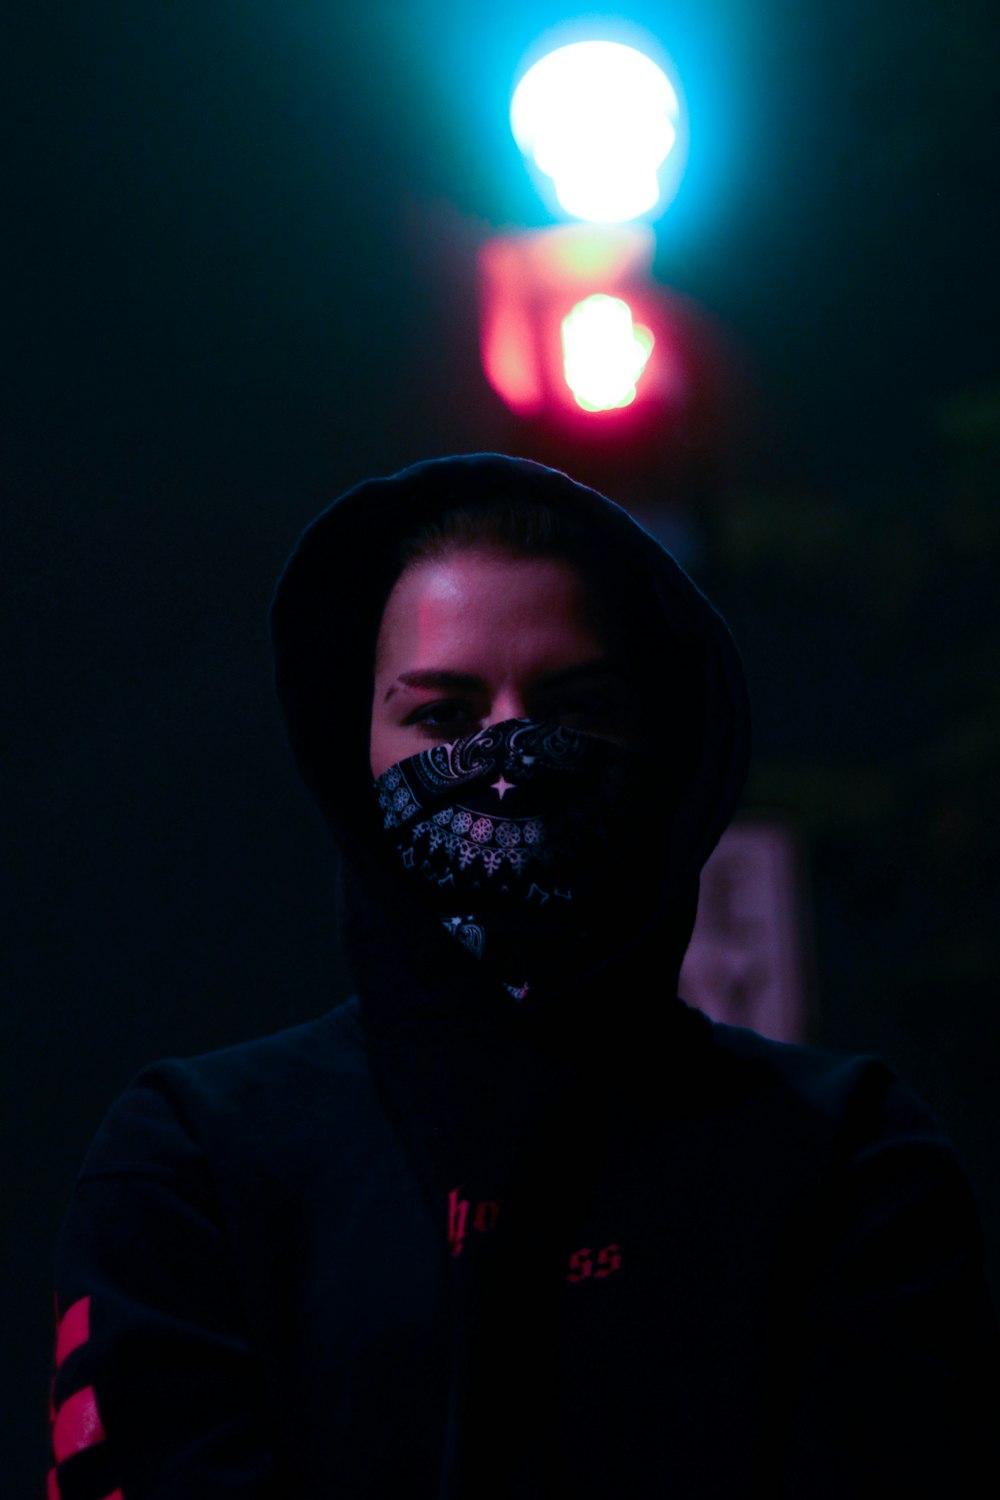 man in black hoodie wearing mask